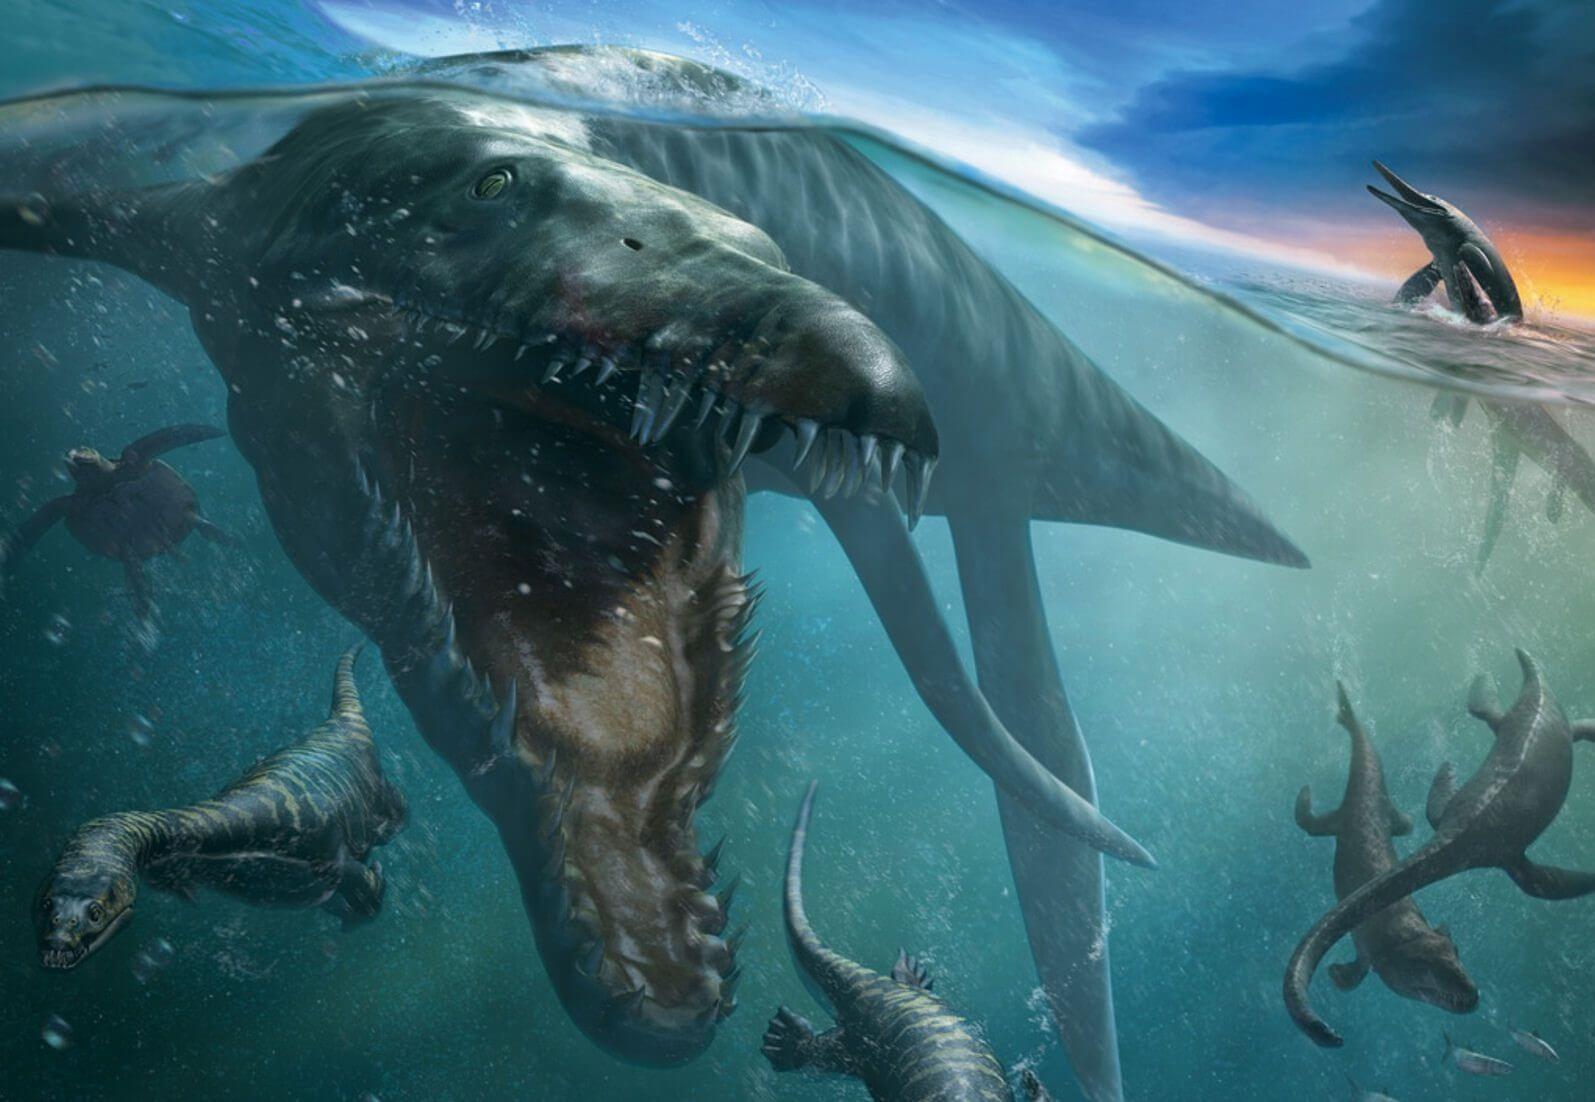 Okyanusta av arayan bir pliosaurus'un dijital illüstrasyonu.